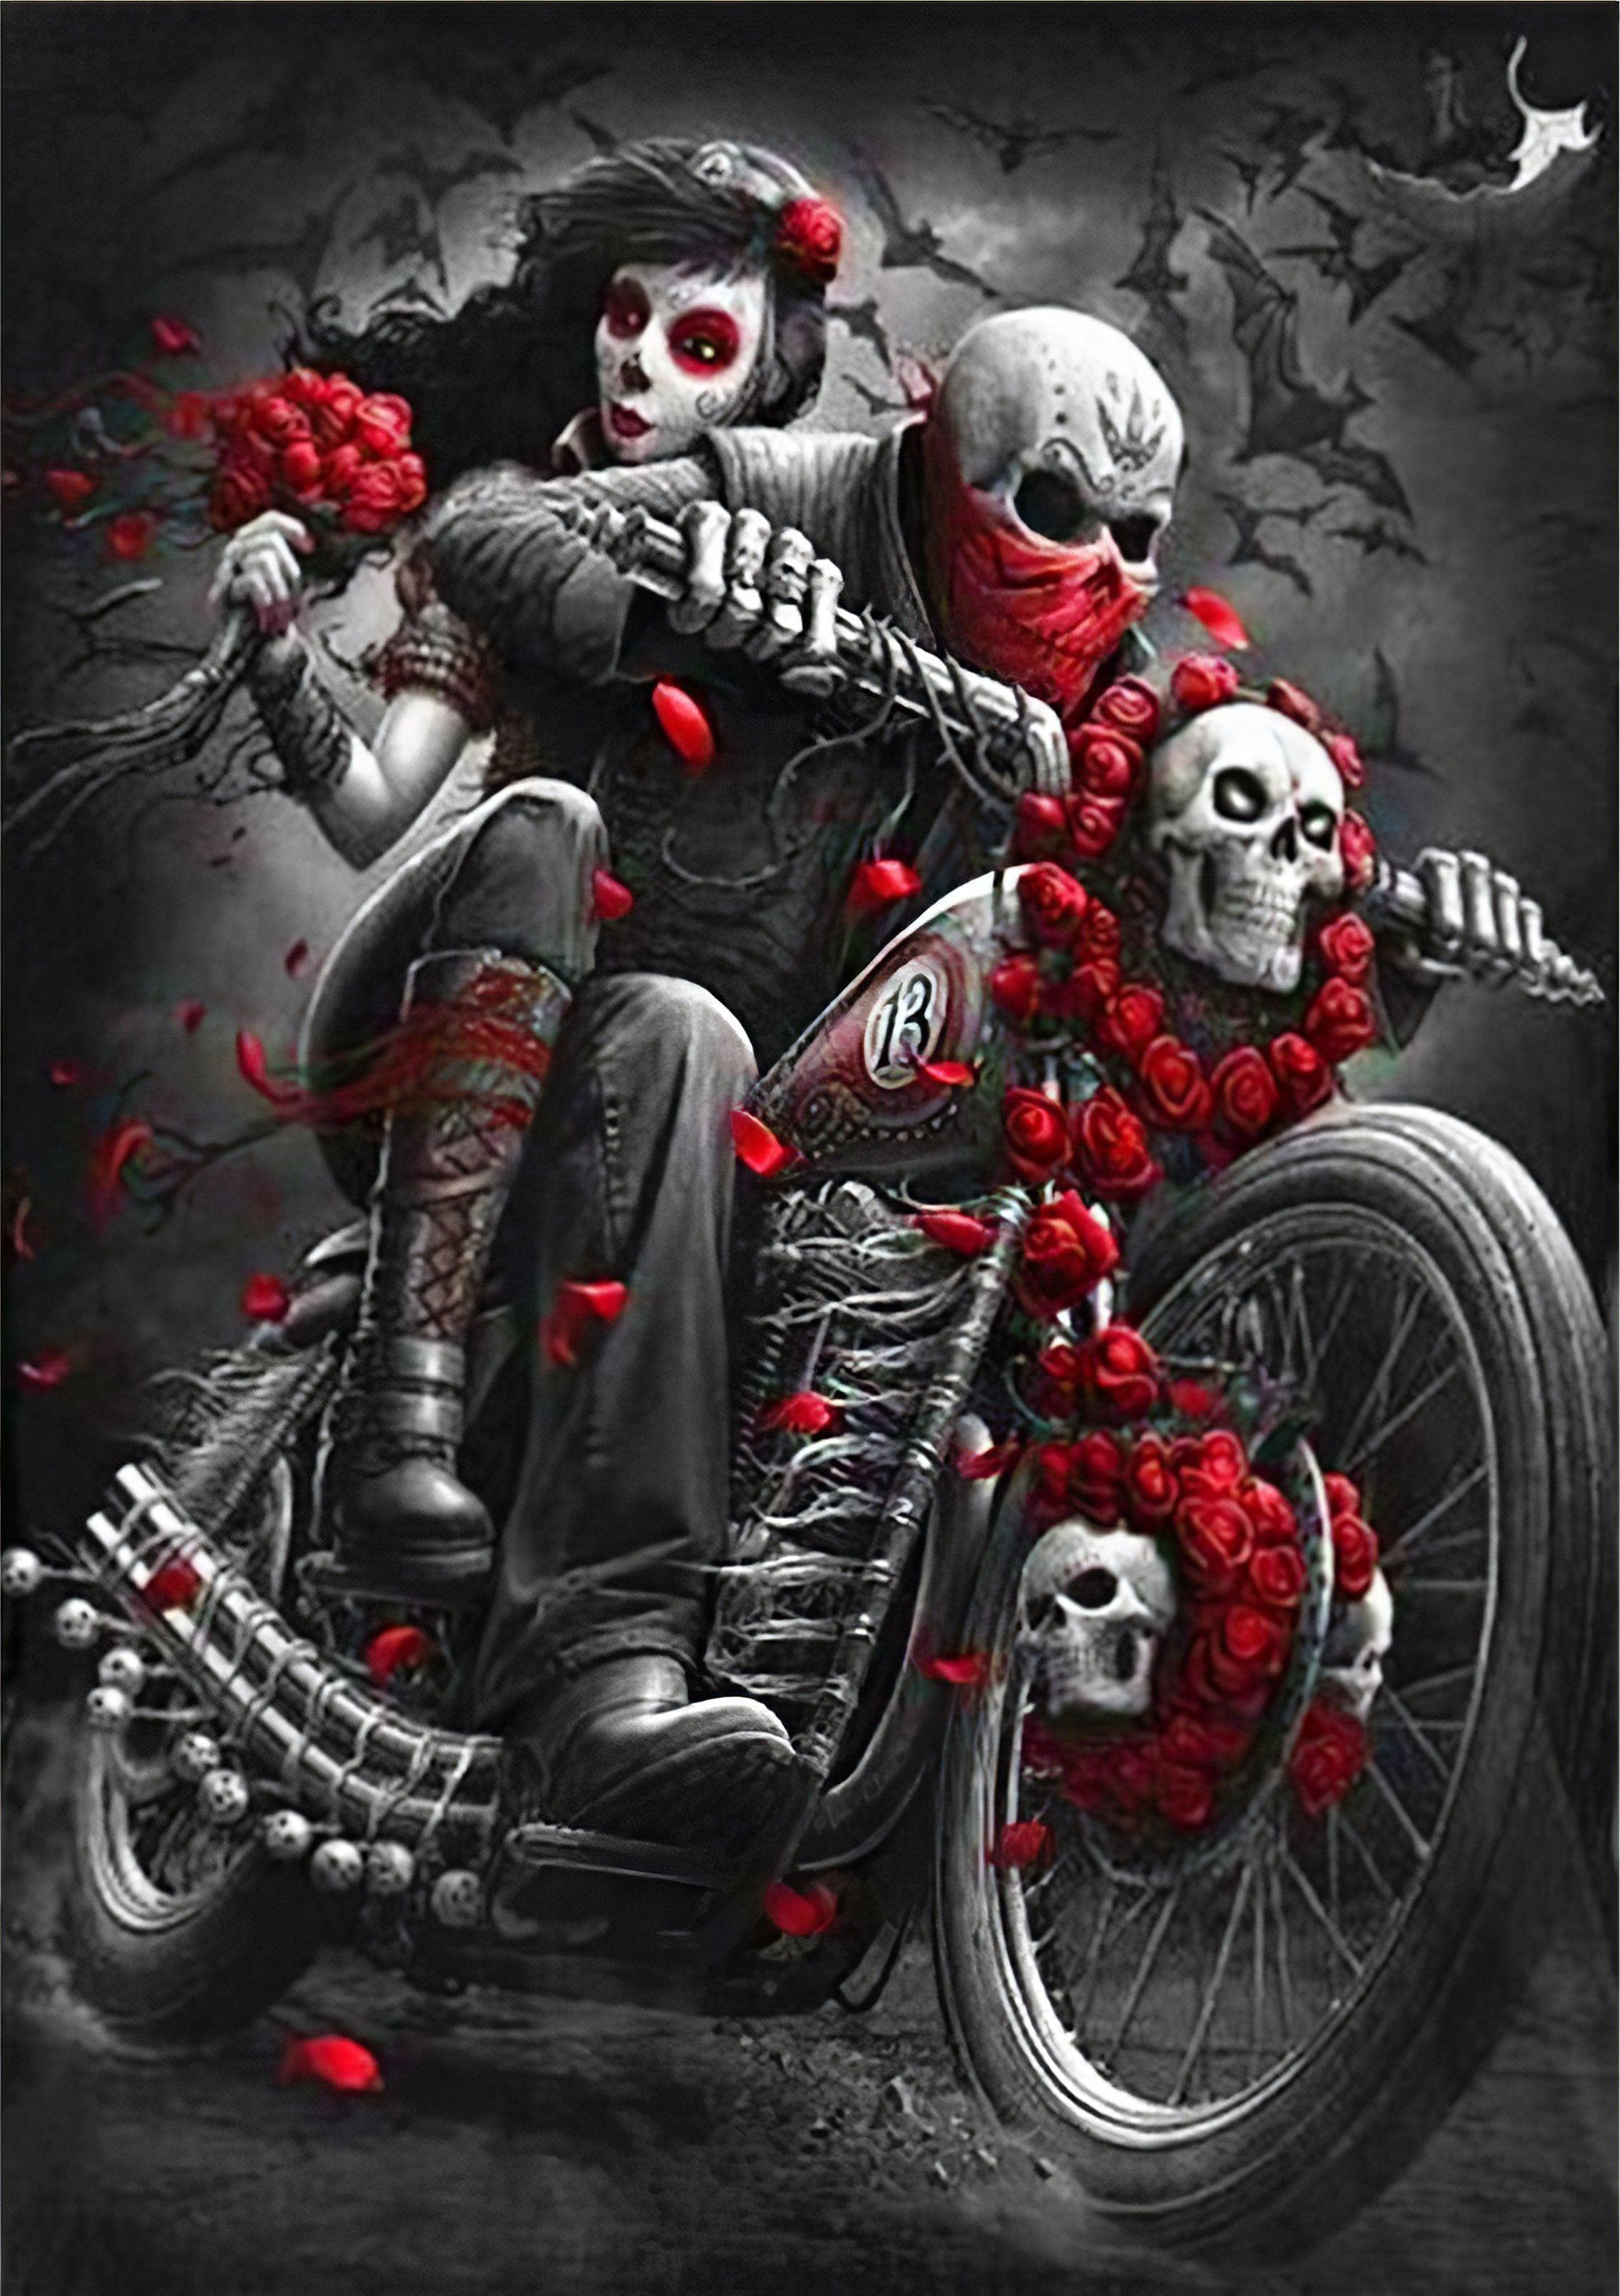 Skull Riding The Bike